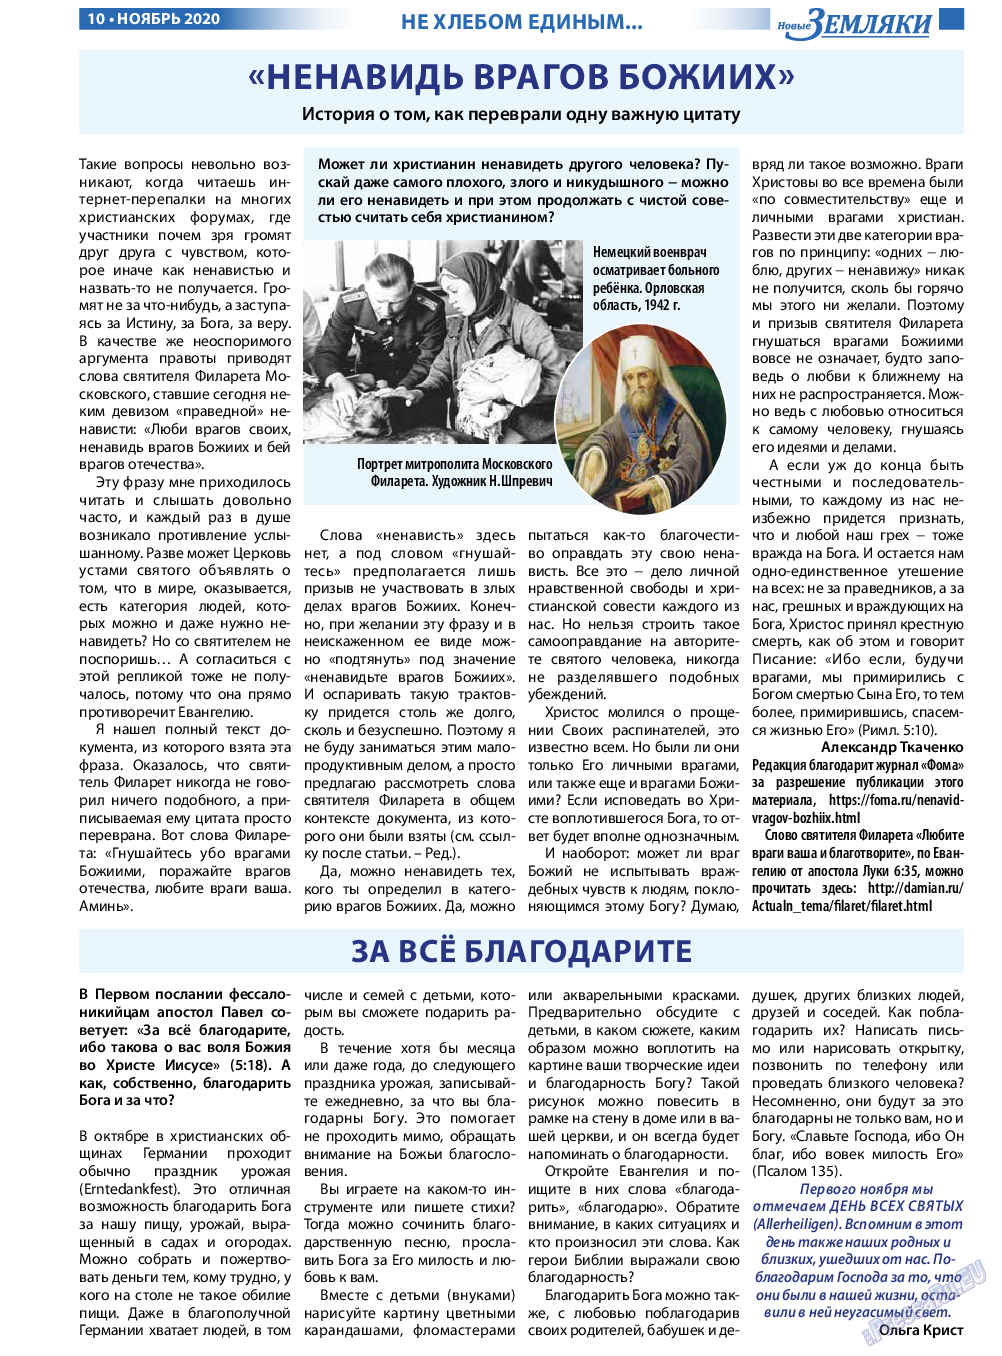 Новые Земляки, газета. 2020 №11 стр.10